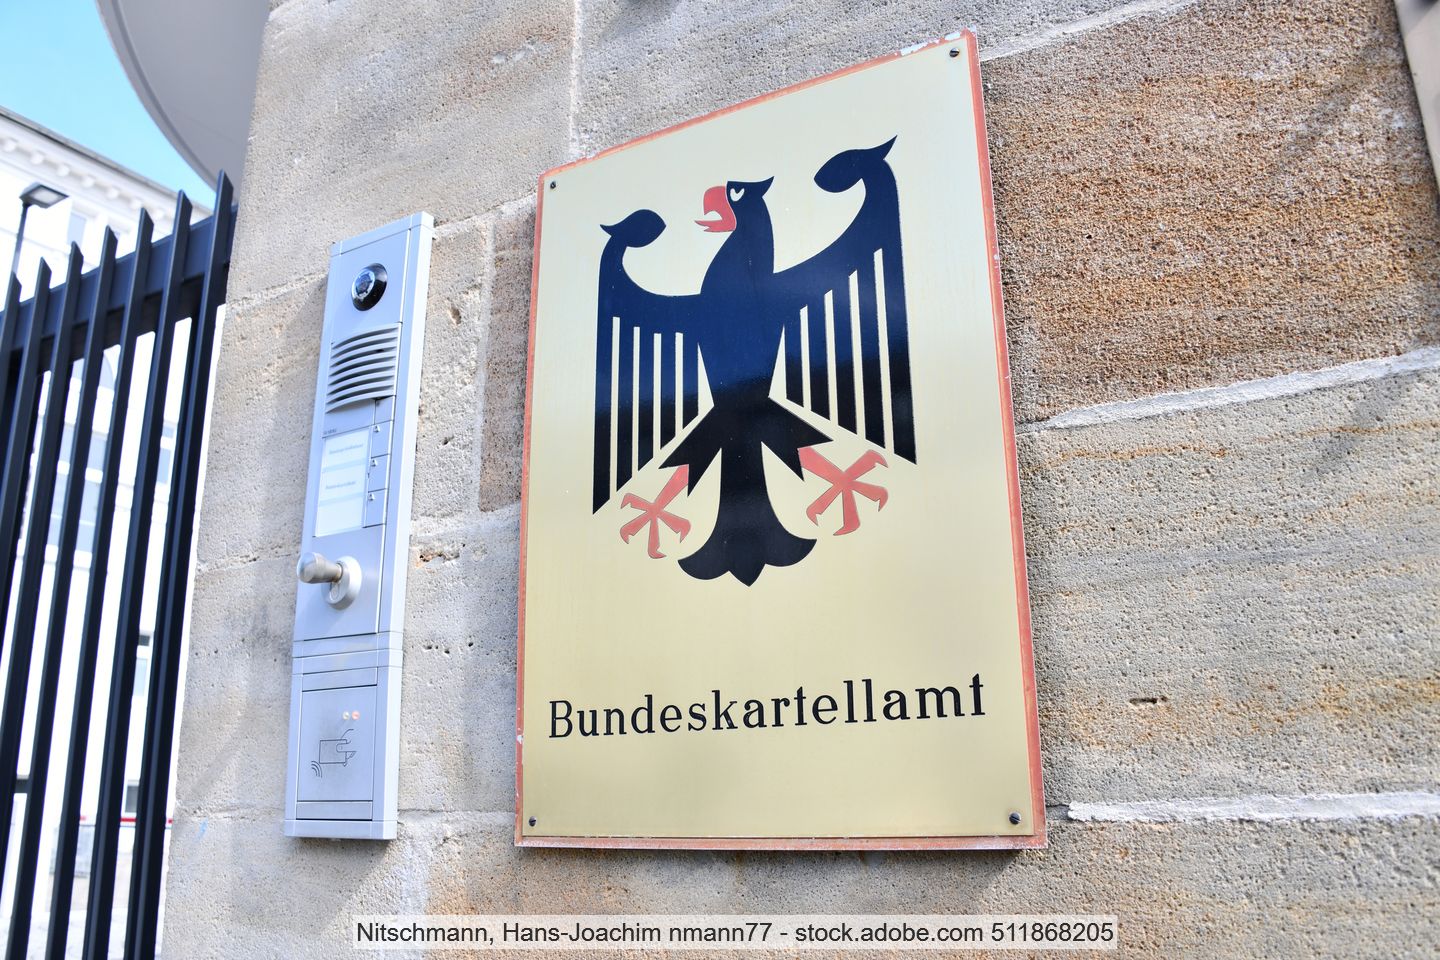 Bundeskartellamt, German Federal Cartel Office.